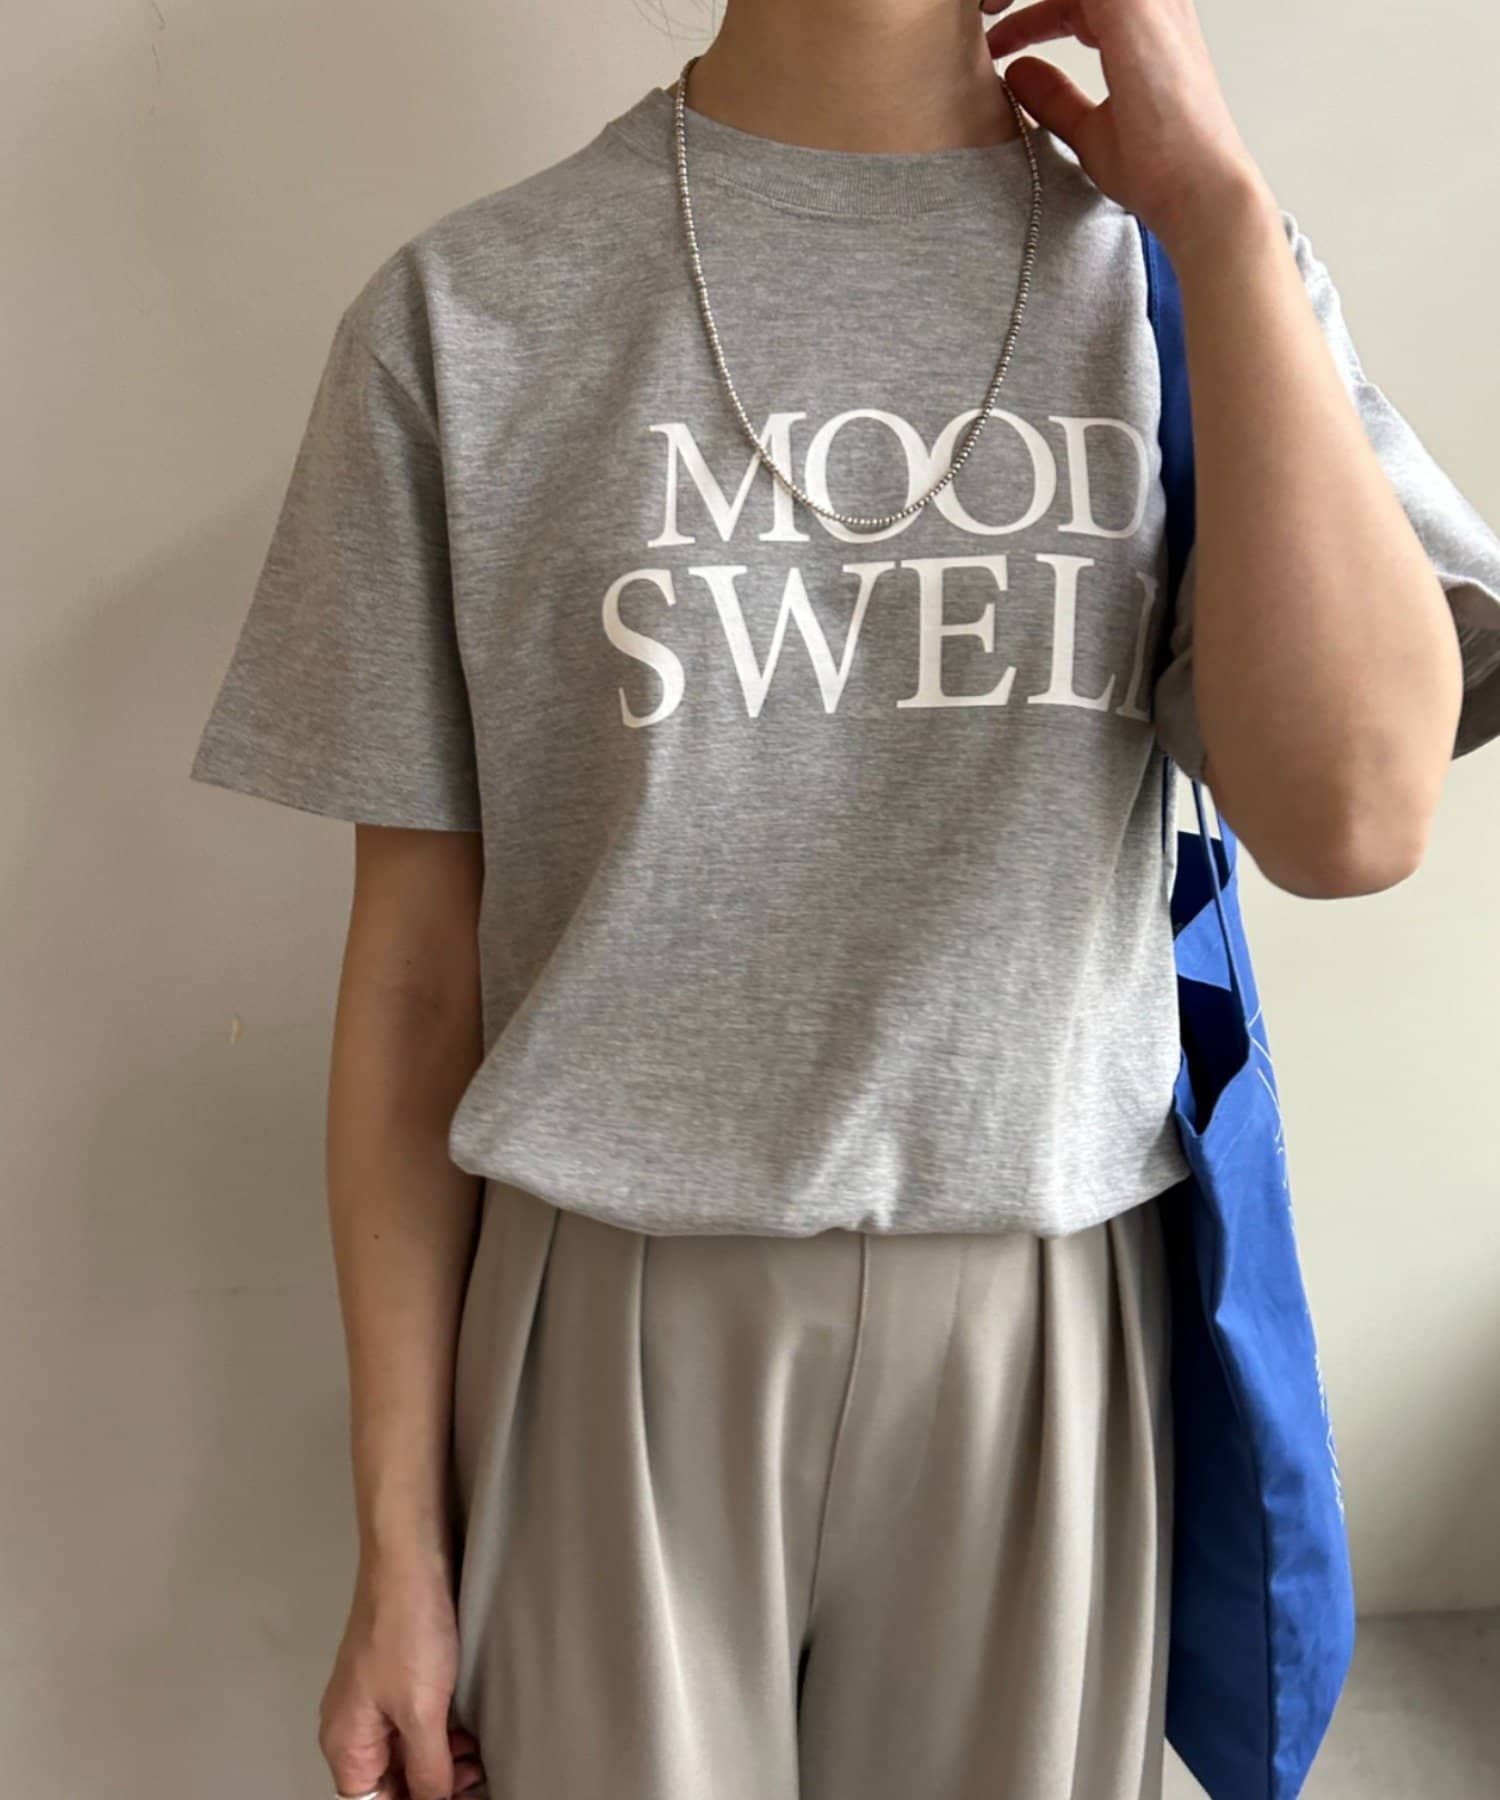 SHENERY(シーナリー) 【今シーズンのテーマロゴがポイント】Mood Swell Tee